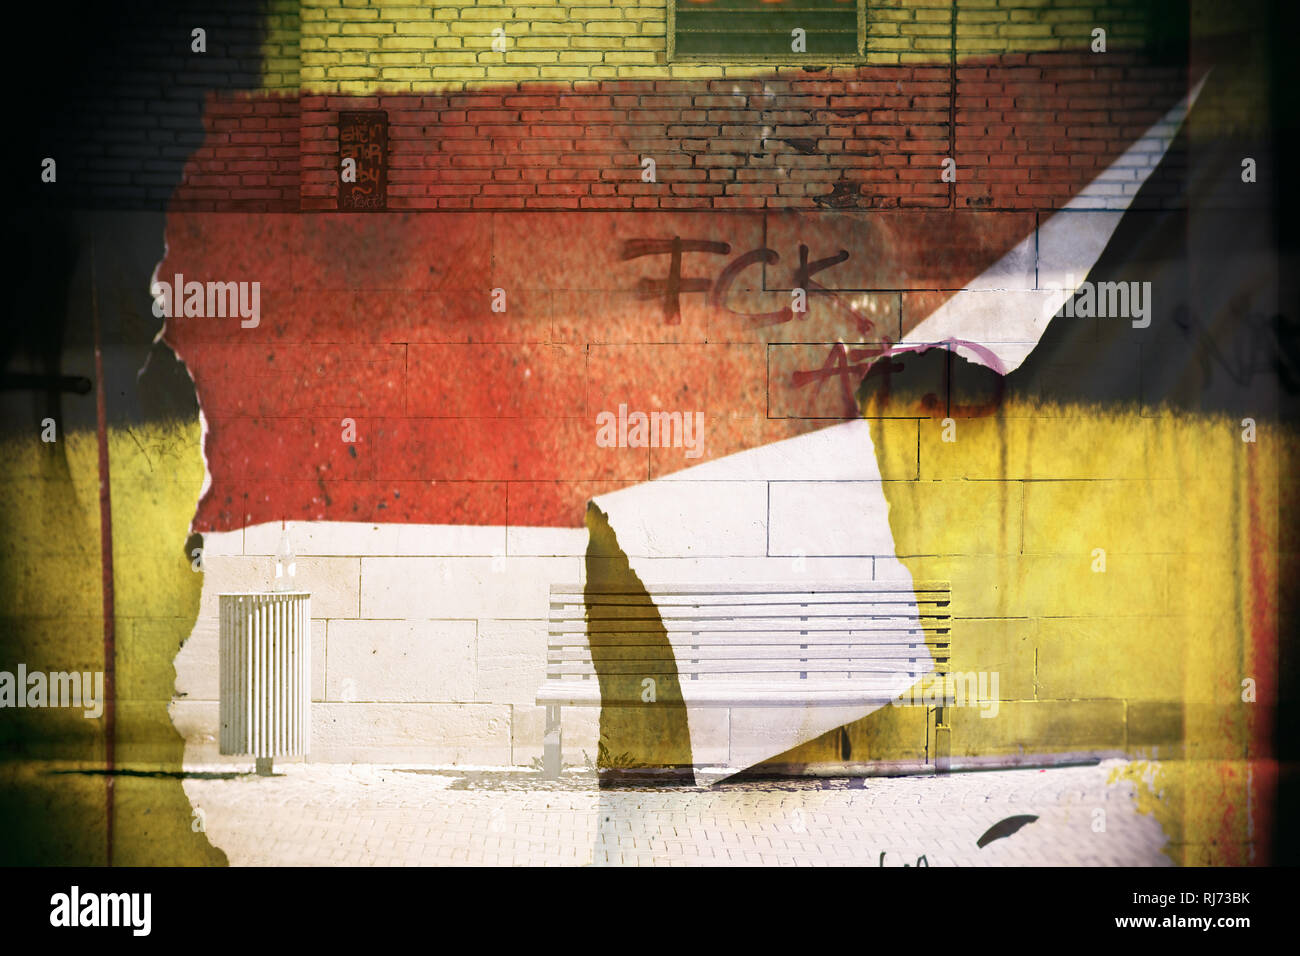 Abstrakte Montage einer Parkbank vor einer mit politischen Slogans bekritzelten Wand mit abgerissenen Papierfetzen, Stock Photo